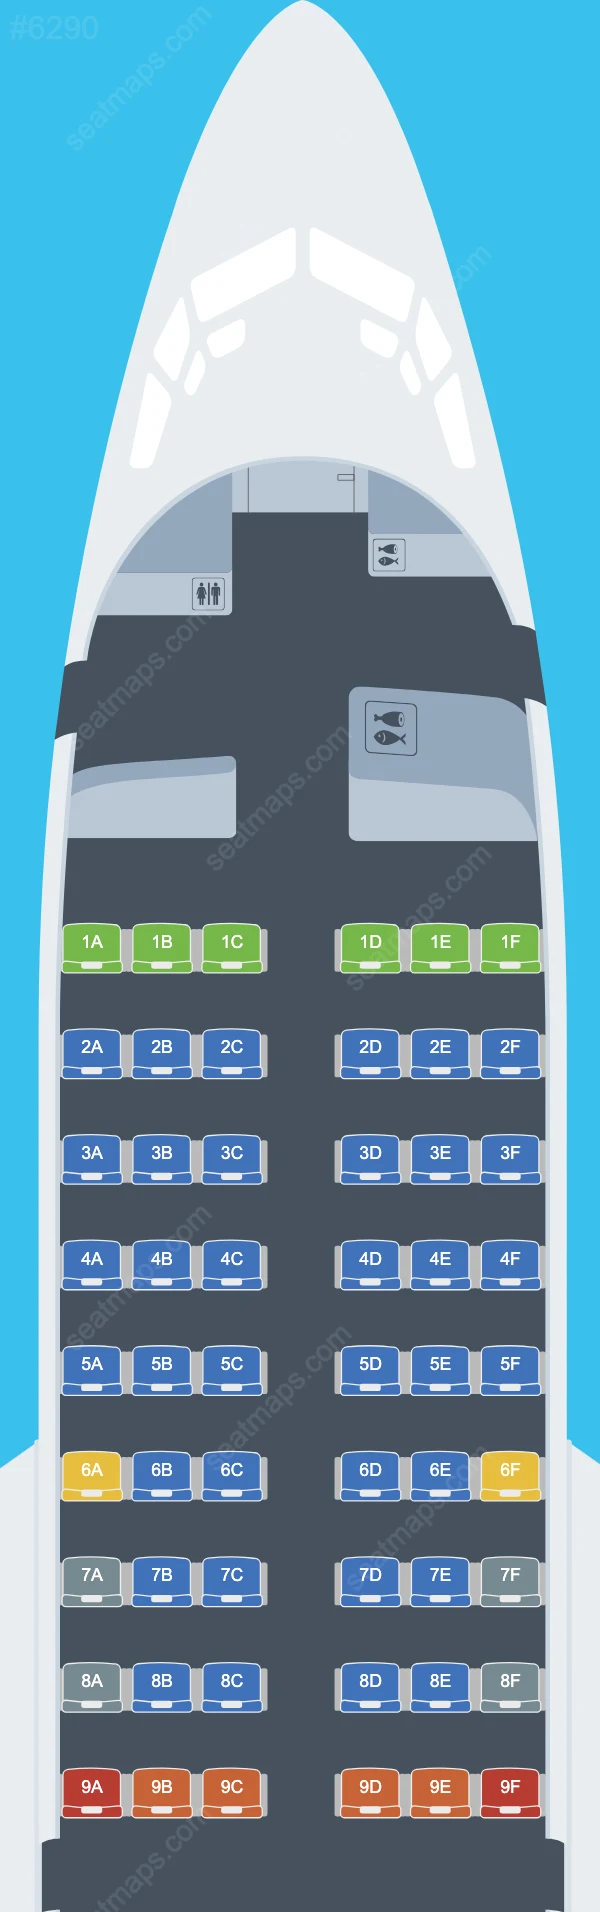 UTair Boeing 737 Seat Maps 737-500